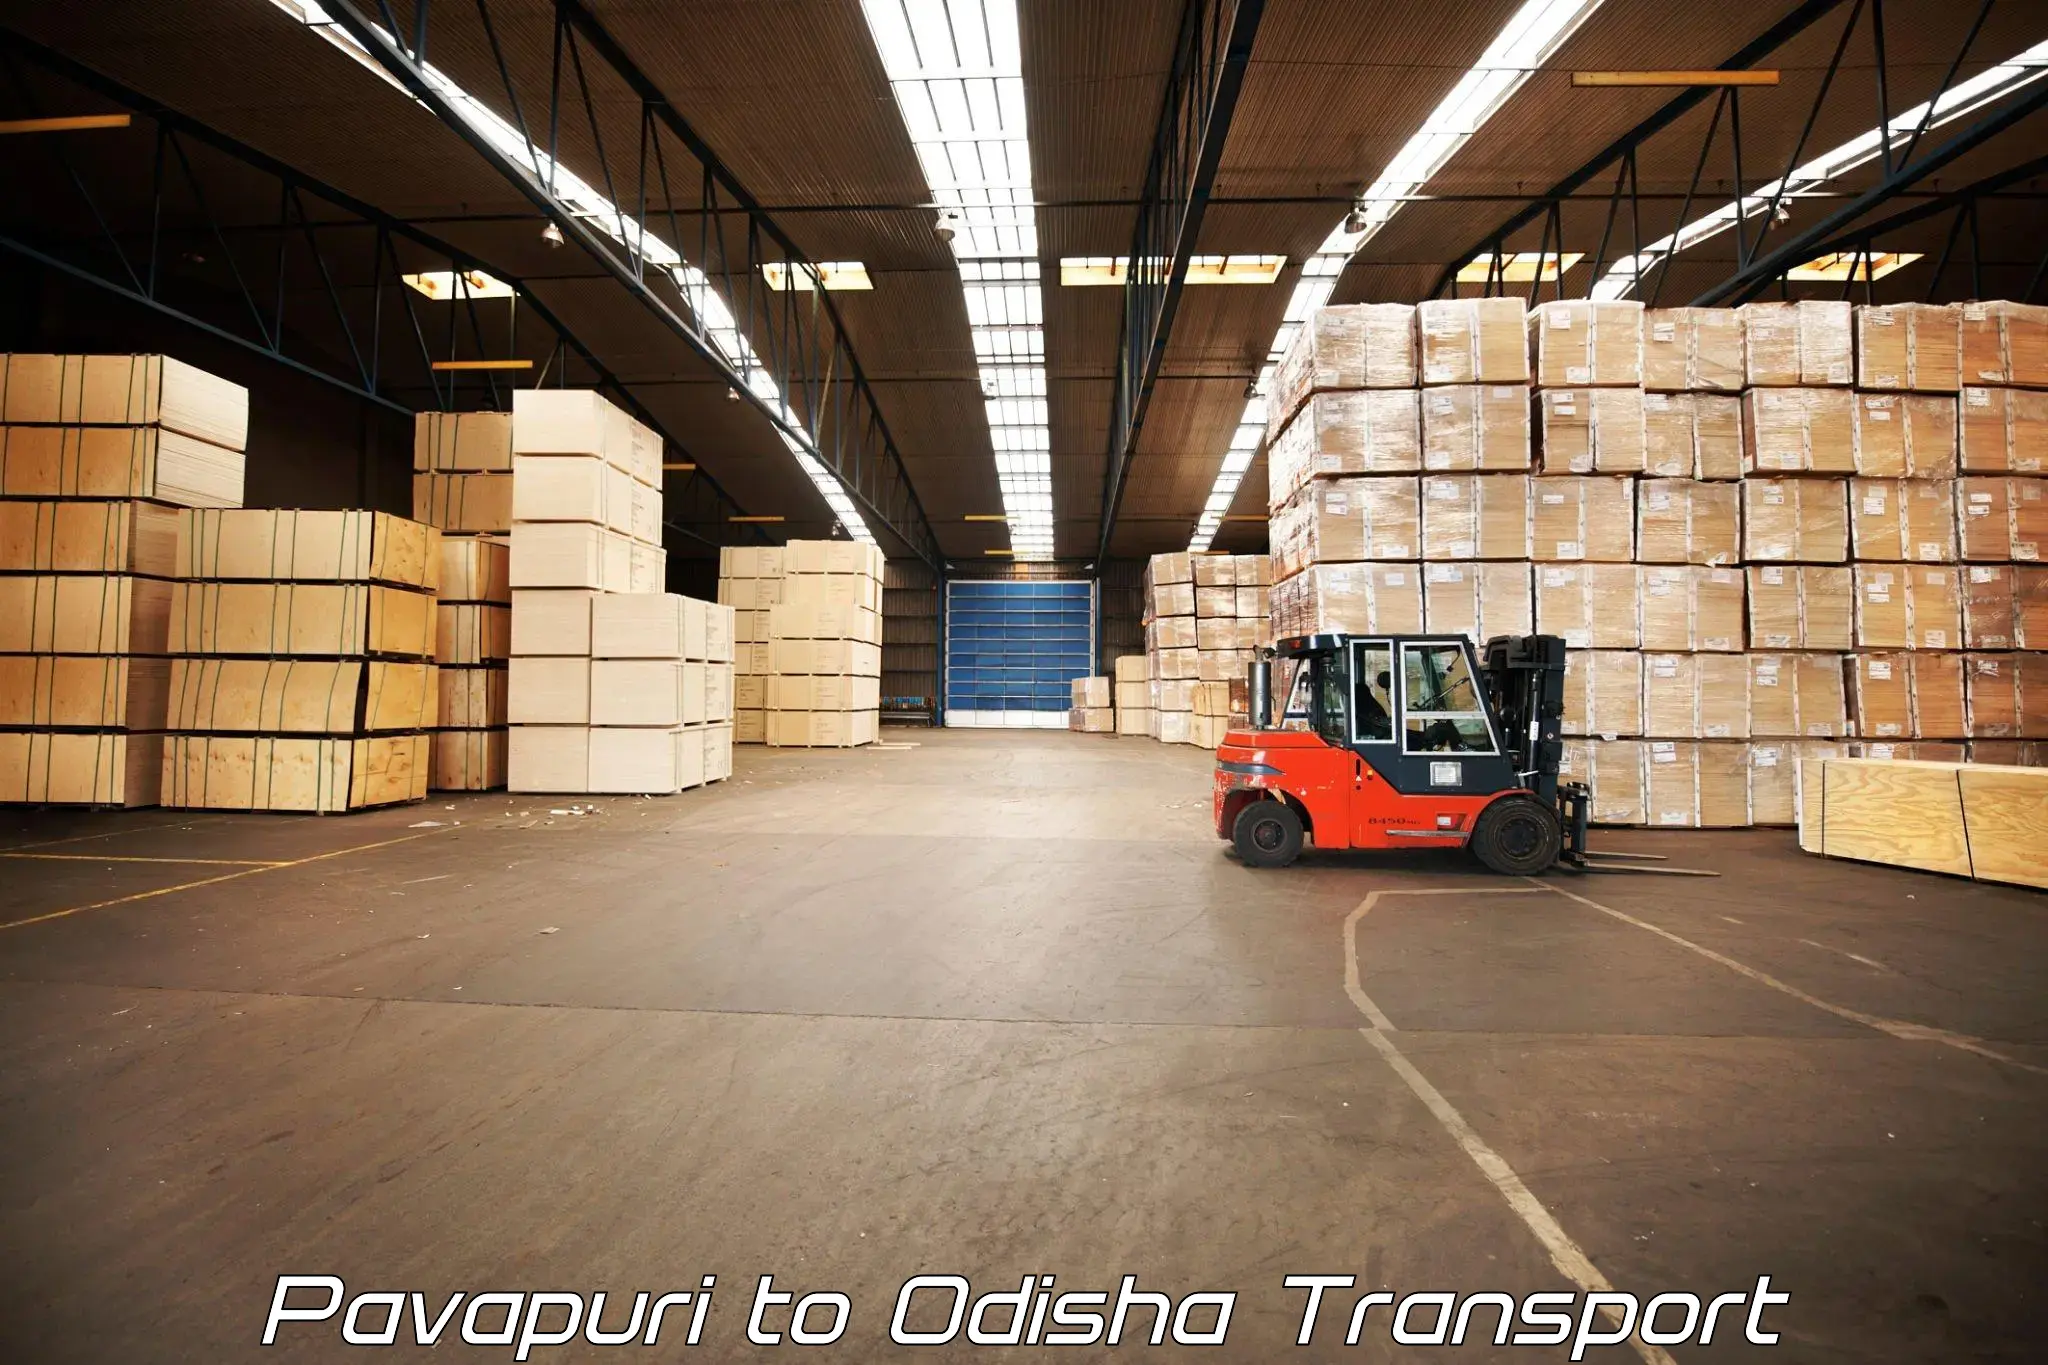 Part load transport service in India Pavapuri to Patkura